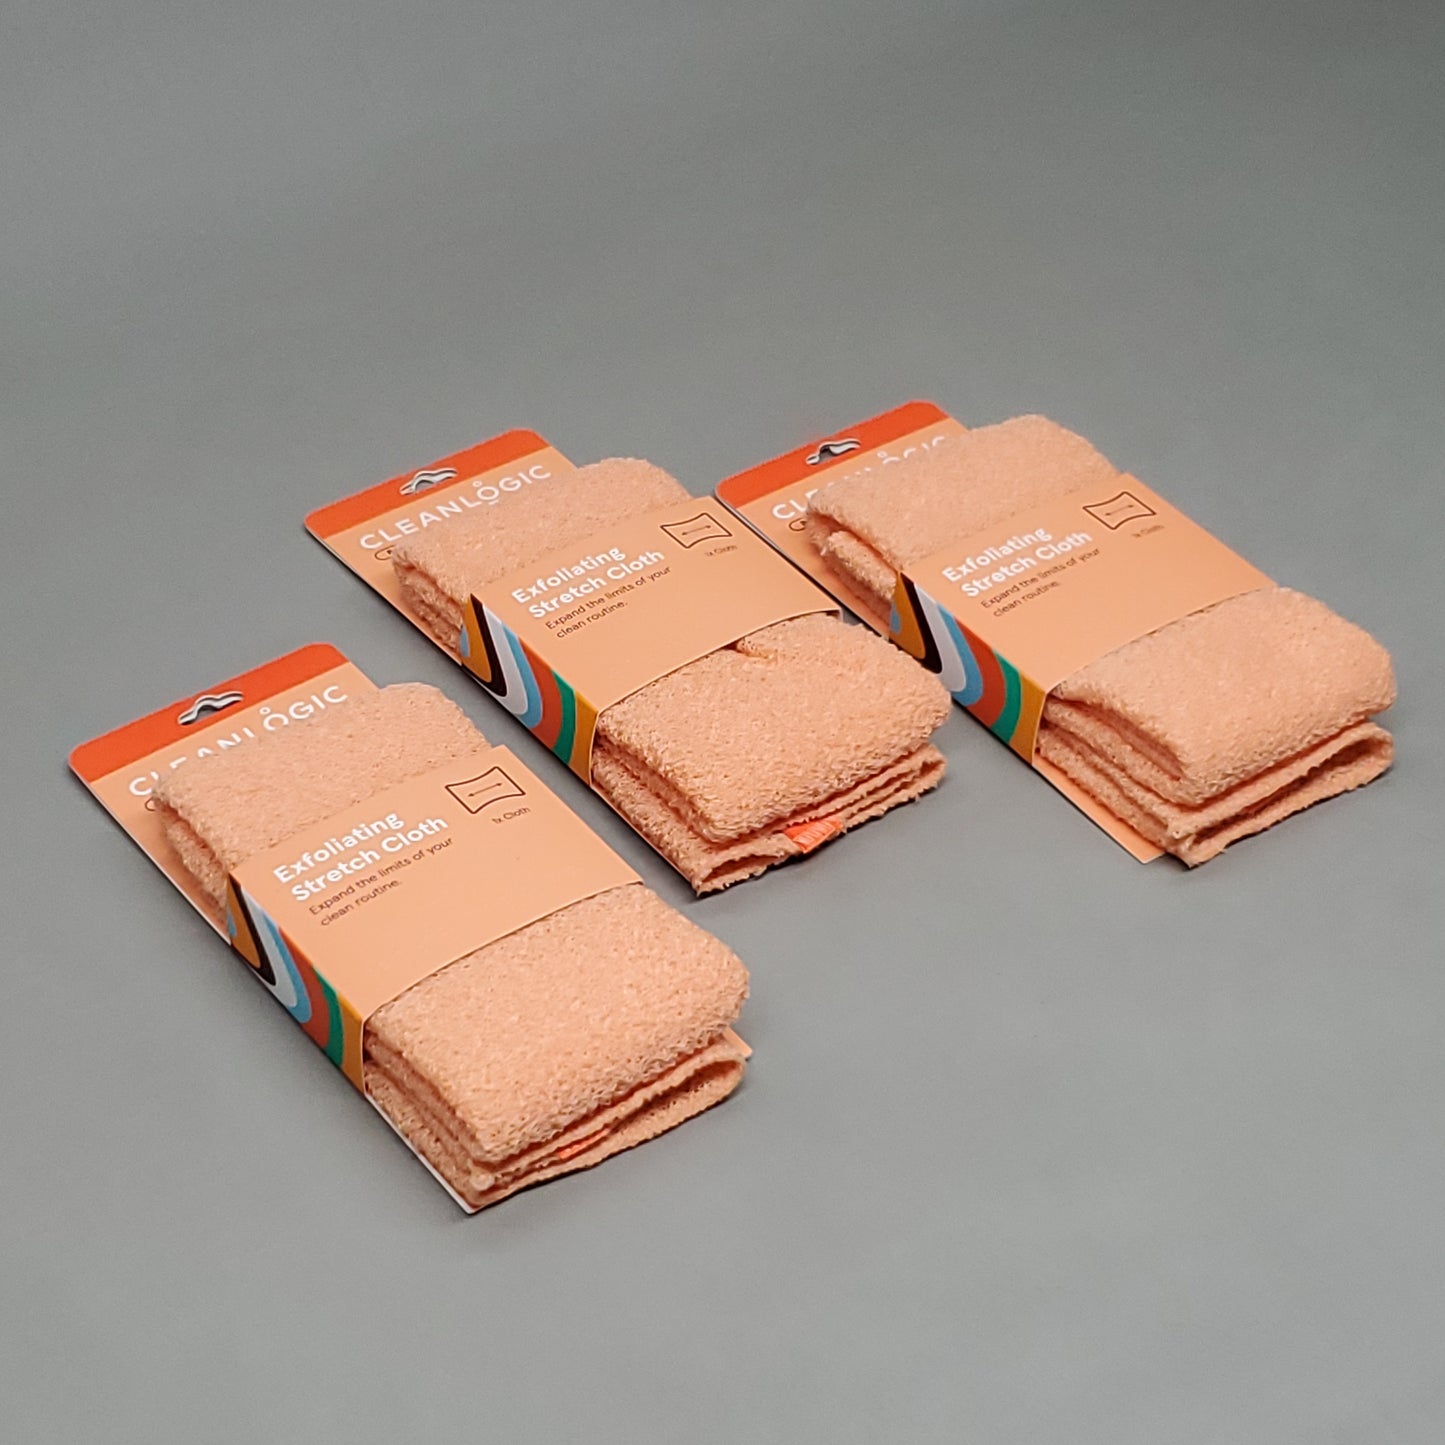 CLEANLOGIC 3 Pack of Exfoliating Stretch Cloth 8.66" X 17.72" Orange (New)